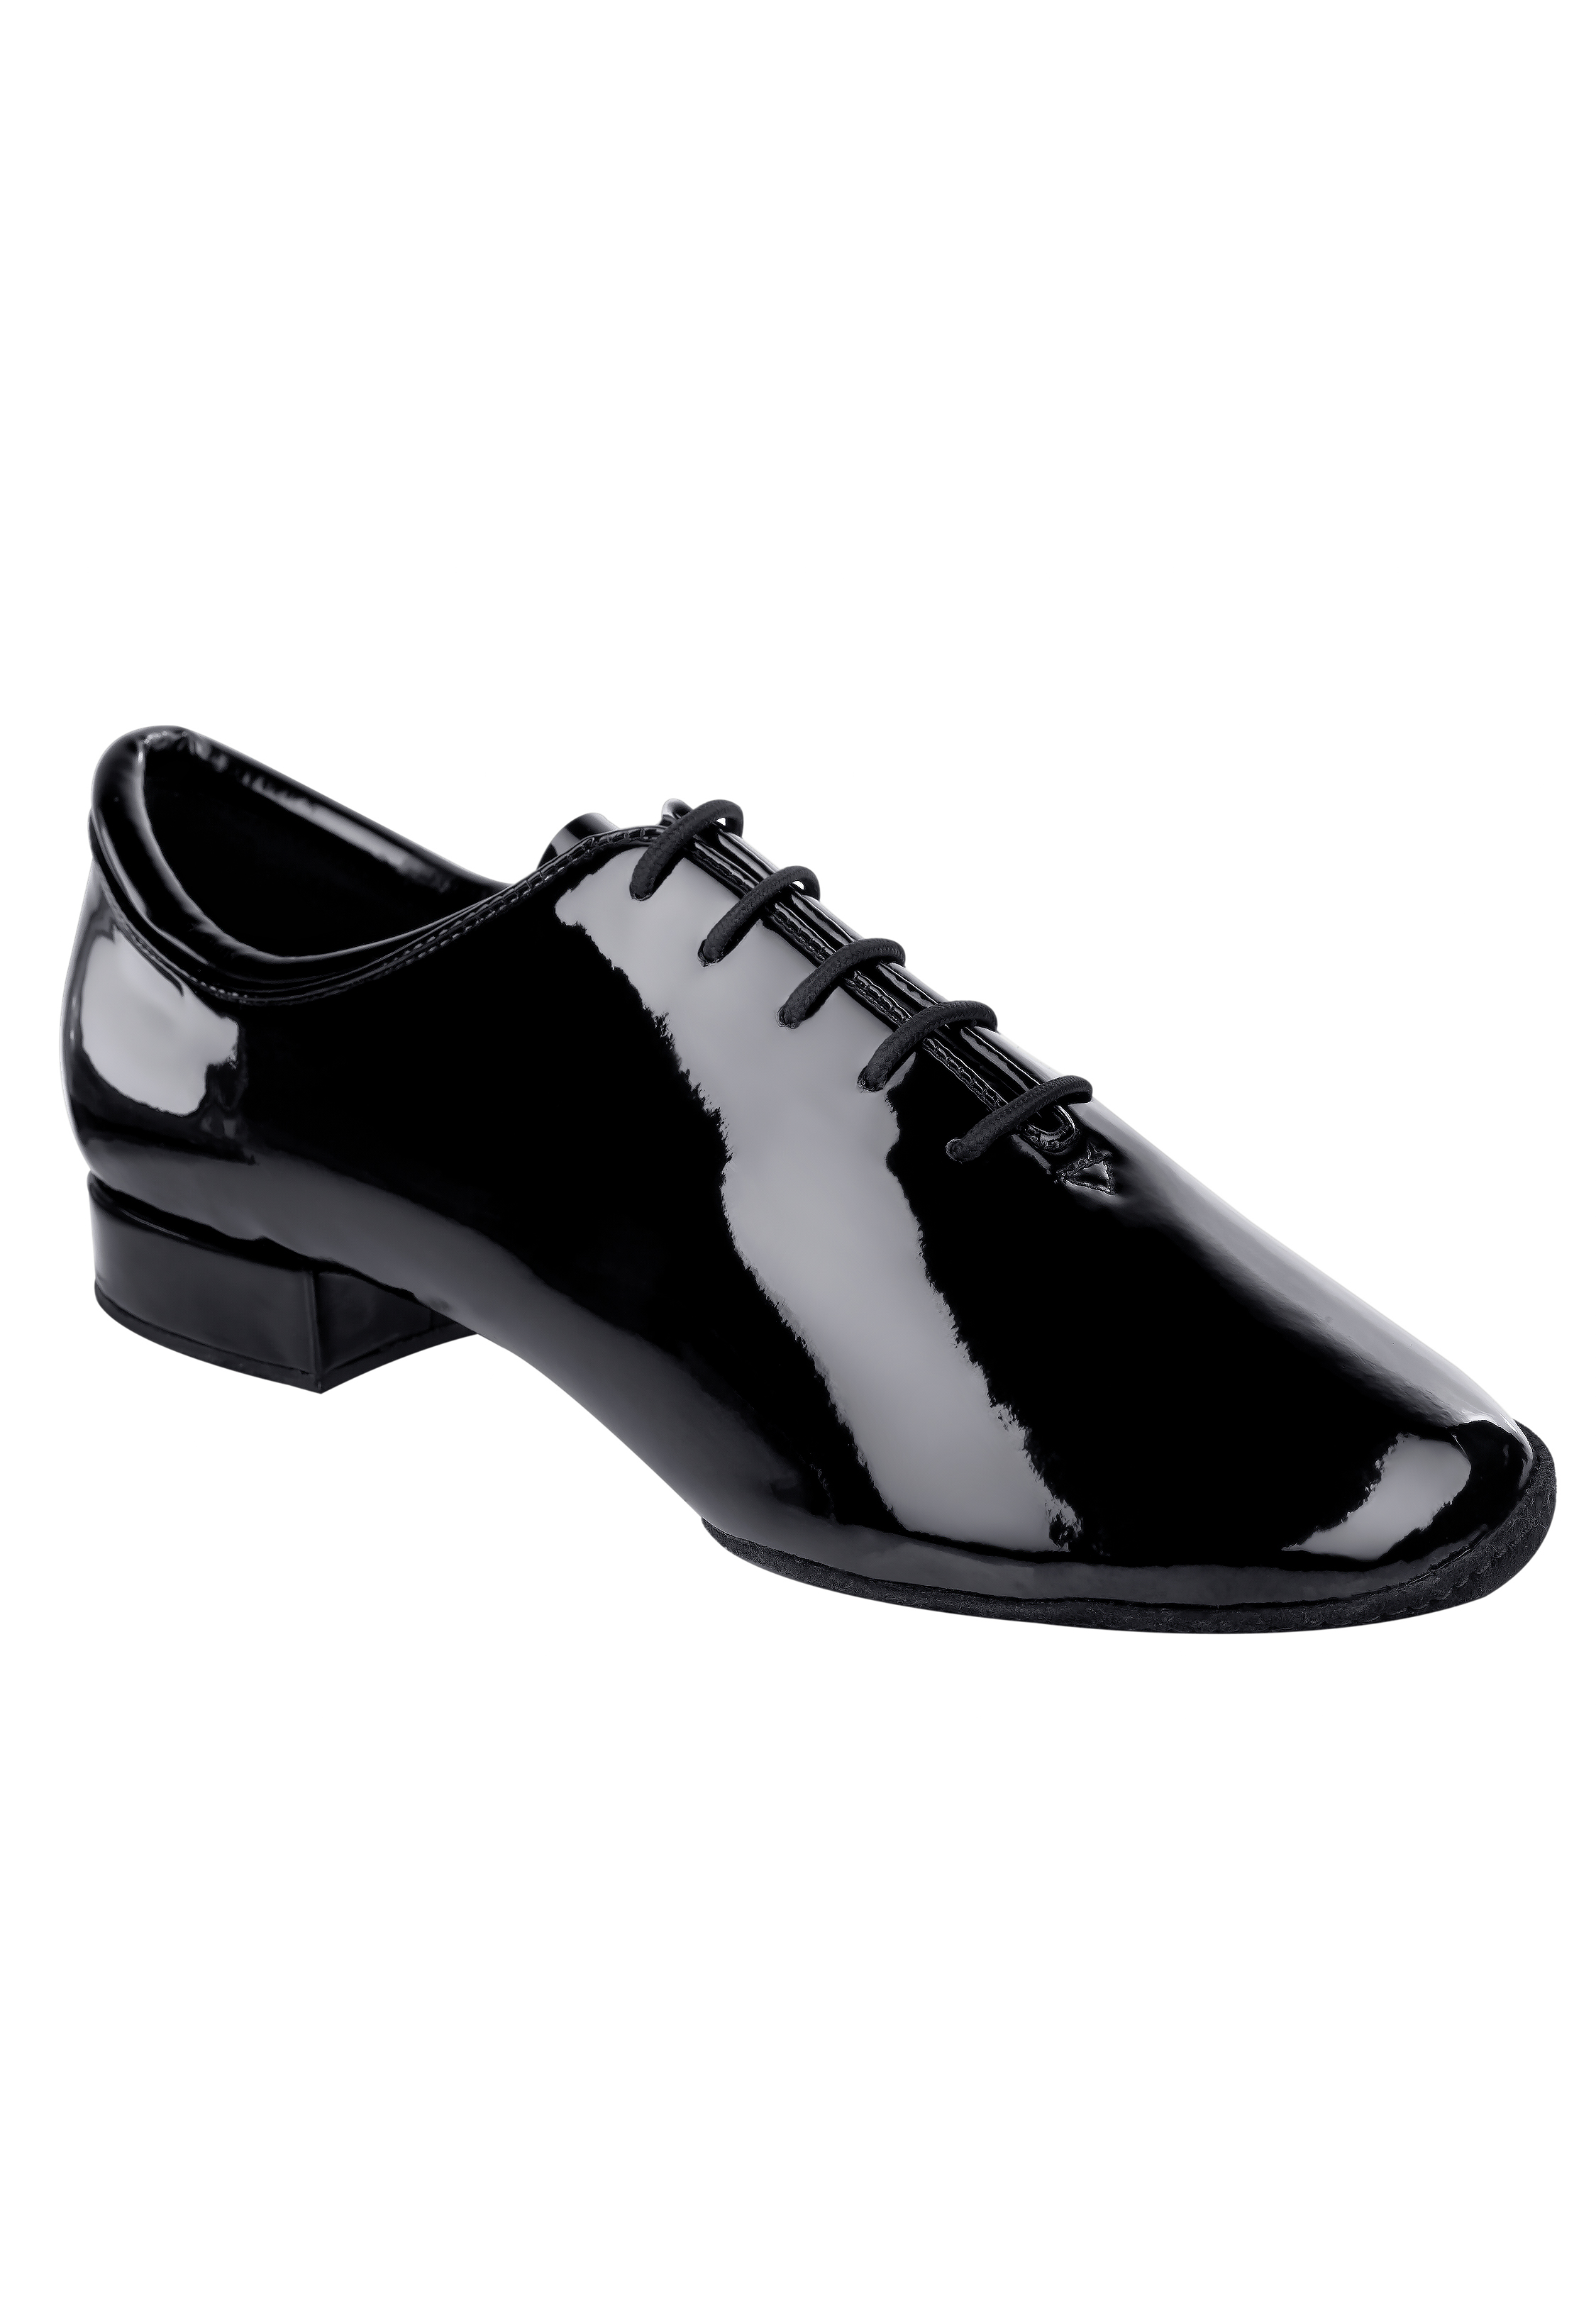 Supadance Shoes & Sportswear | Mens Ballroom/Latin Dance Fashion